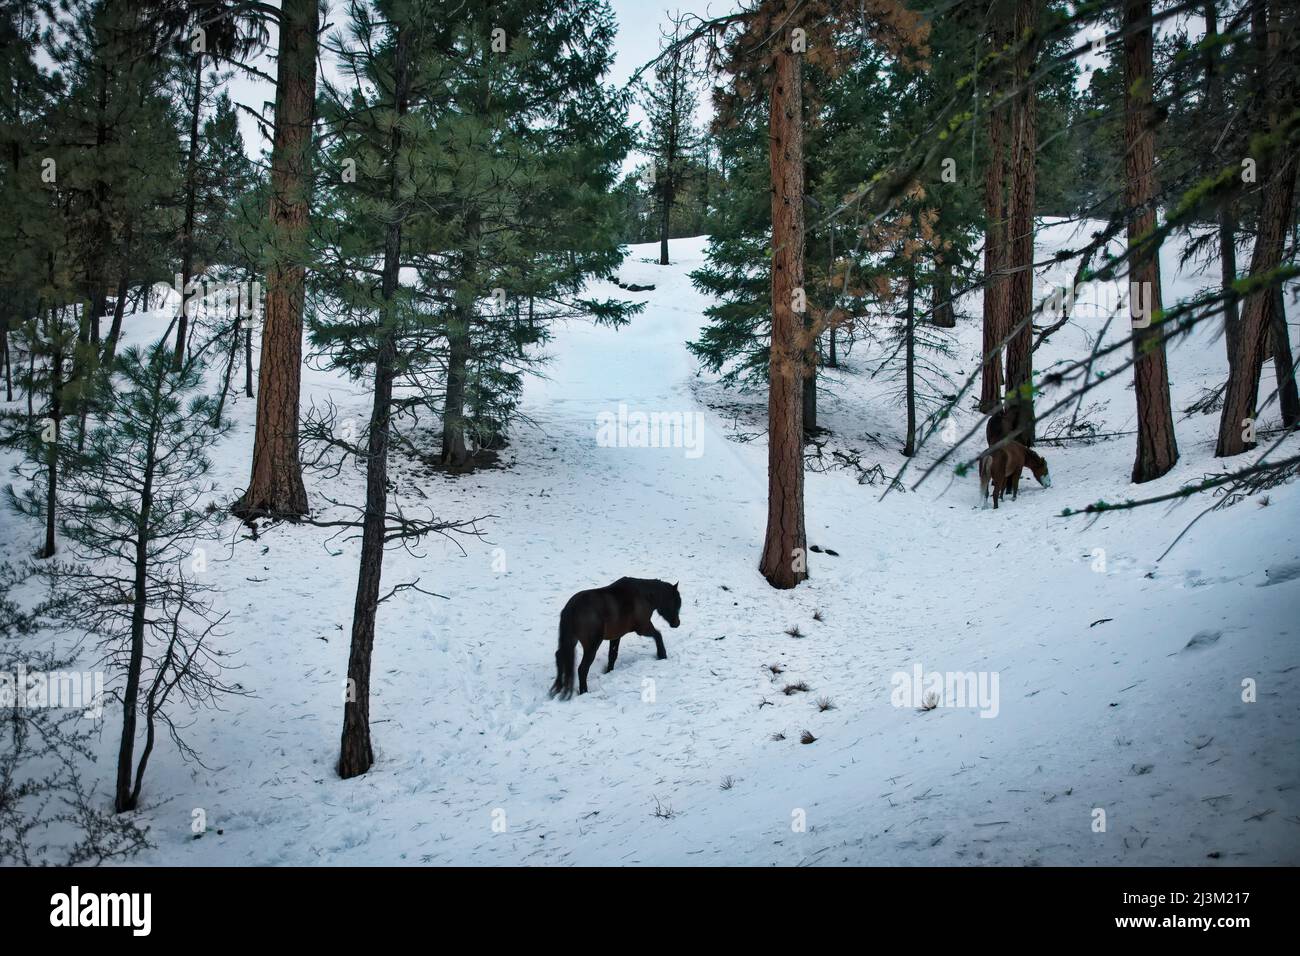 Wilde Pferde kämpfen in den schneebedeckten Bergen im Osten von Oregon um Nahrung. Über 60 Mustangs, die Überreste von indischen und Siedlerpferden sind... Stockfoto